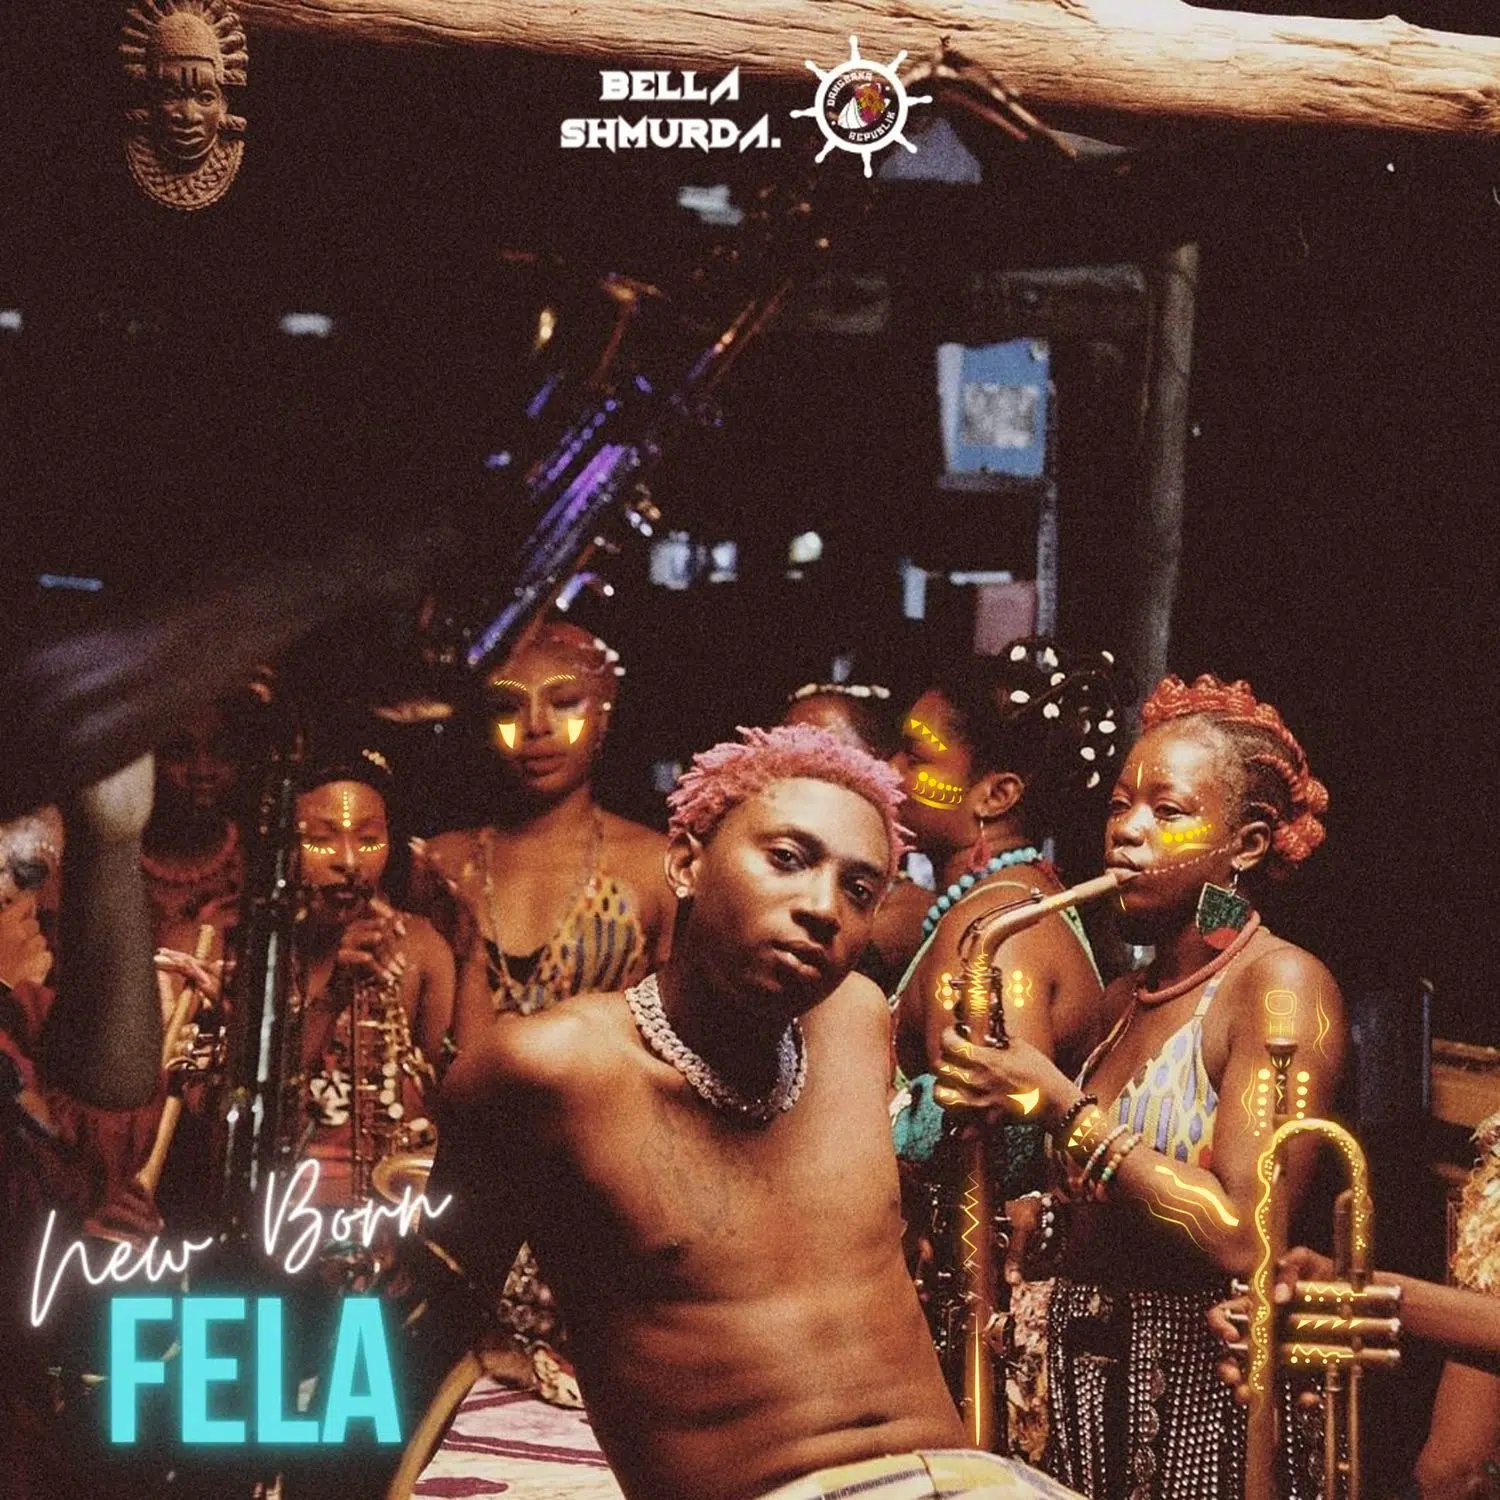 DOWNLOAD: Bella Shmurda – “New Born Fela” Mp3